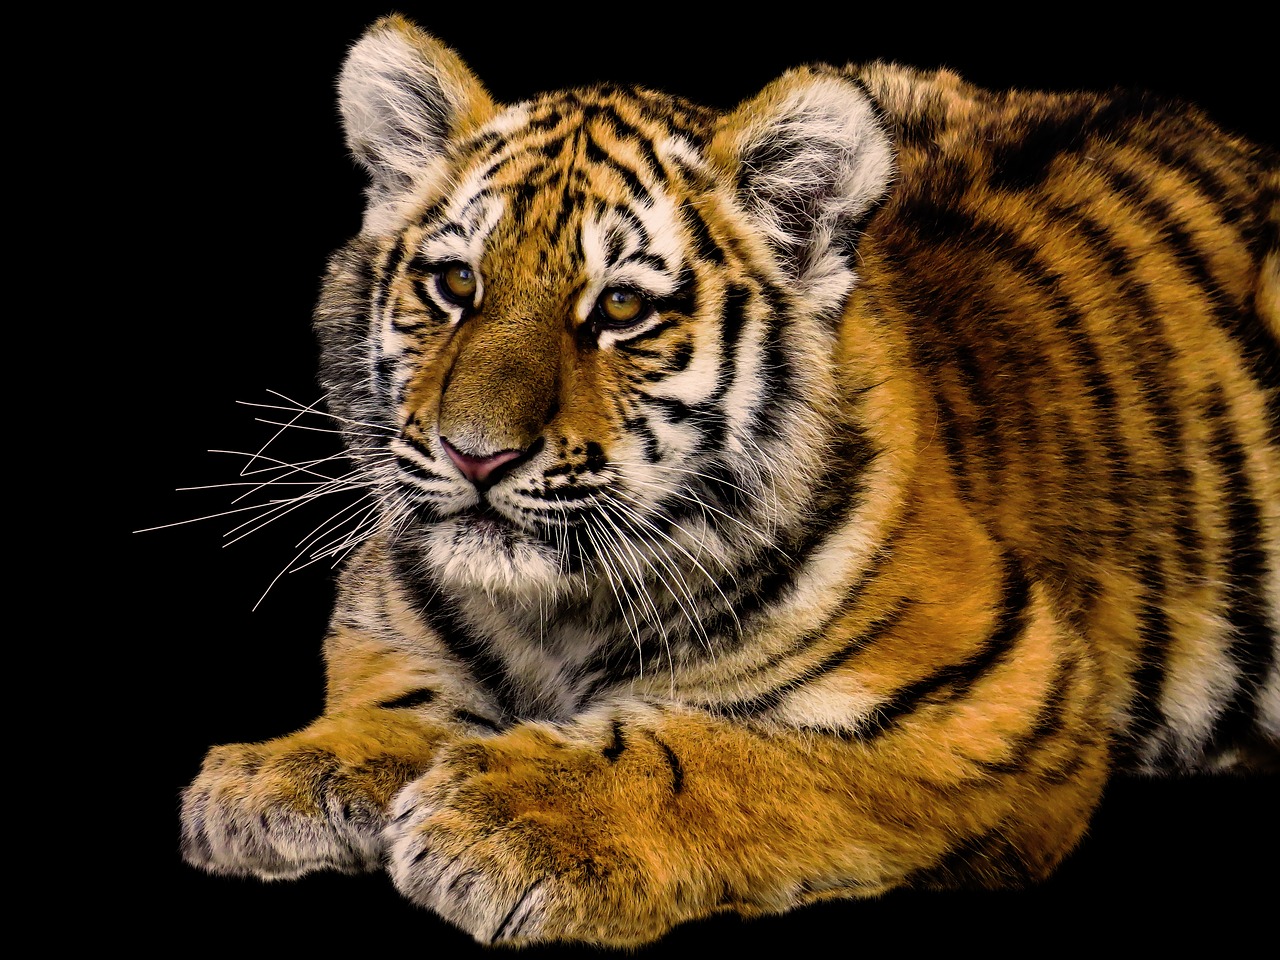 Gyvūnai,  Tigras,  Predator,  Jauna Gyvūnų,  Jauna Tigras,  Didelė Katė,  Iš Arti,  Pavojinga,  Zoo,  Tiergarten